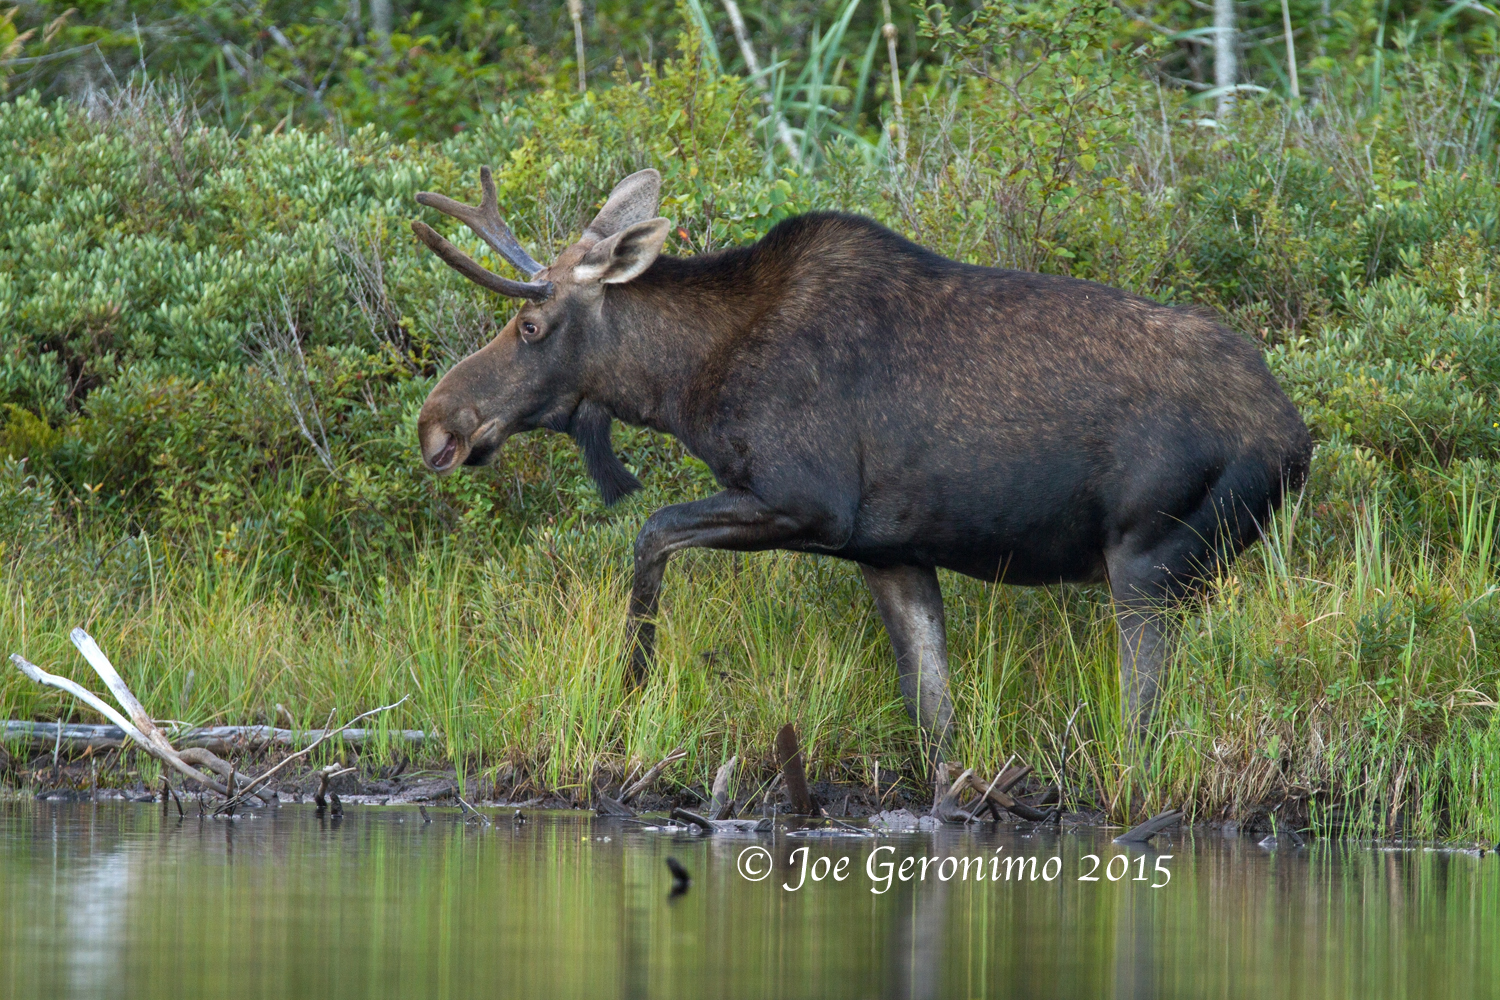 Young bull moose Long Pond Benton, NH August 28th 2015. Image © Joe Geronimo